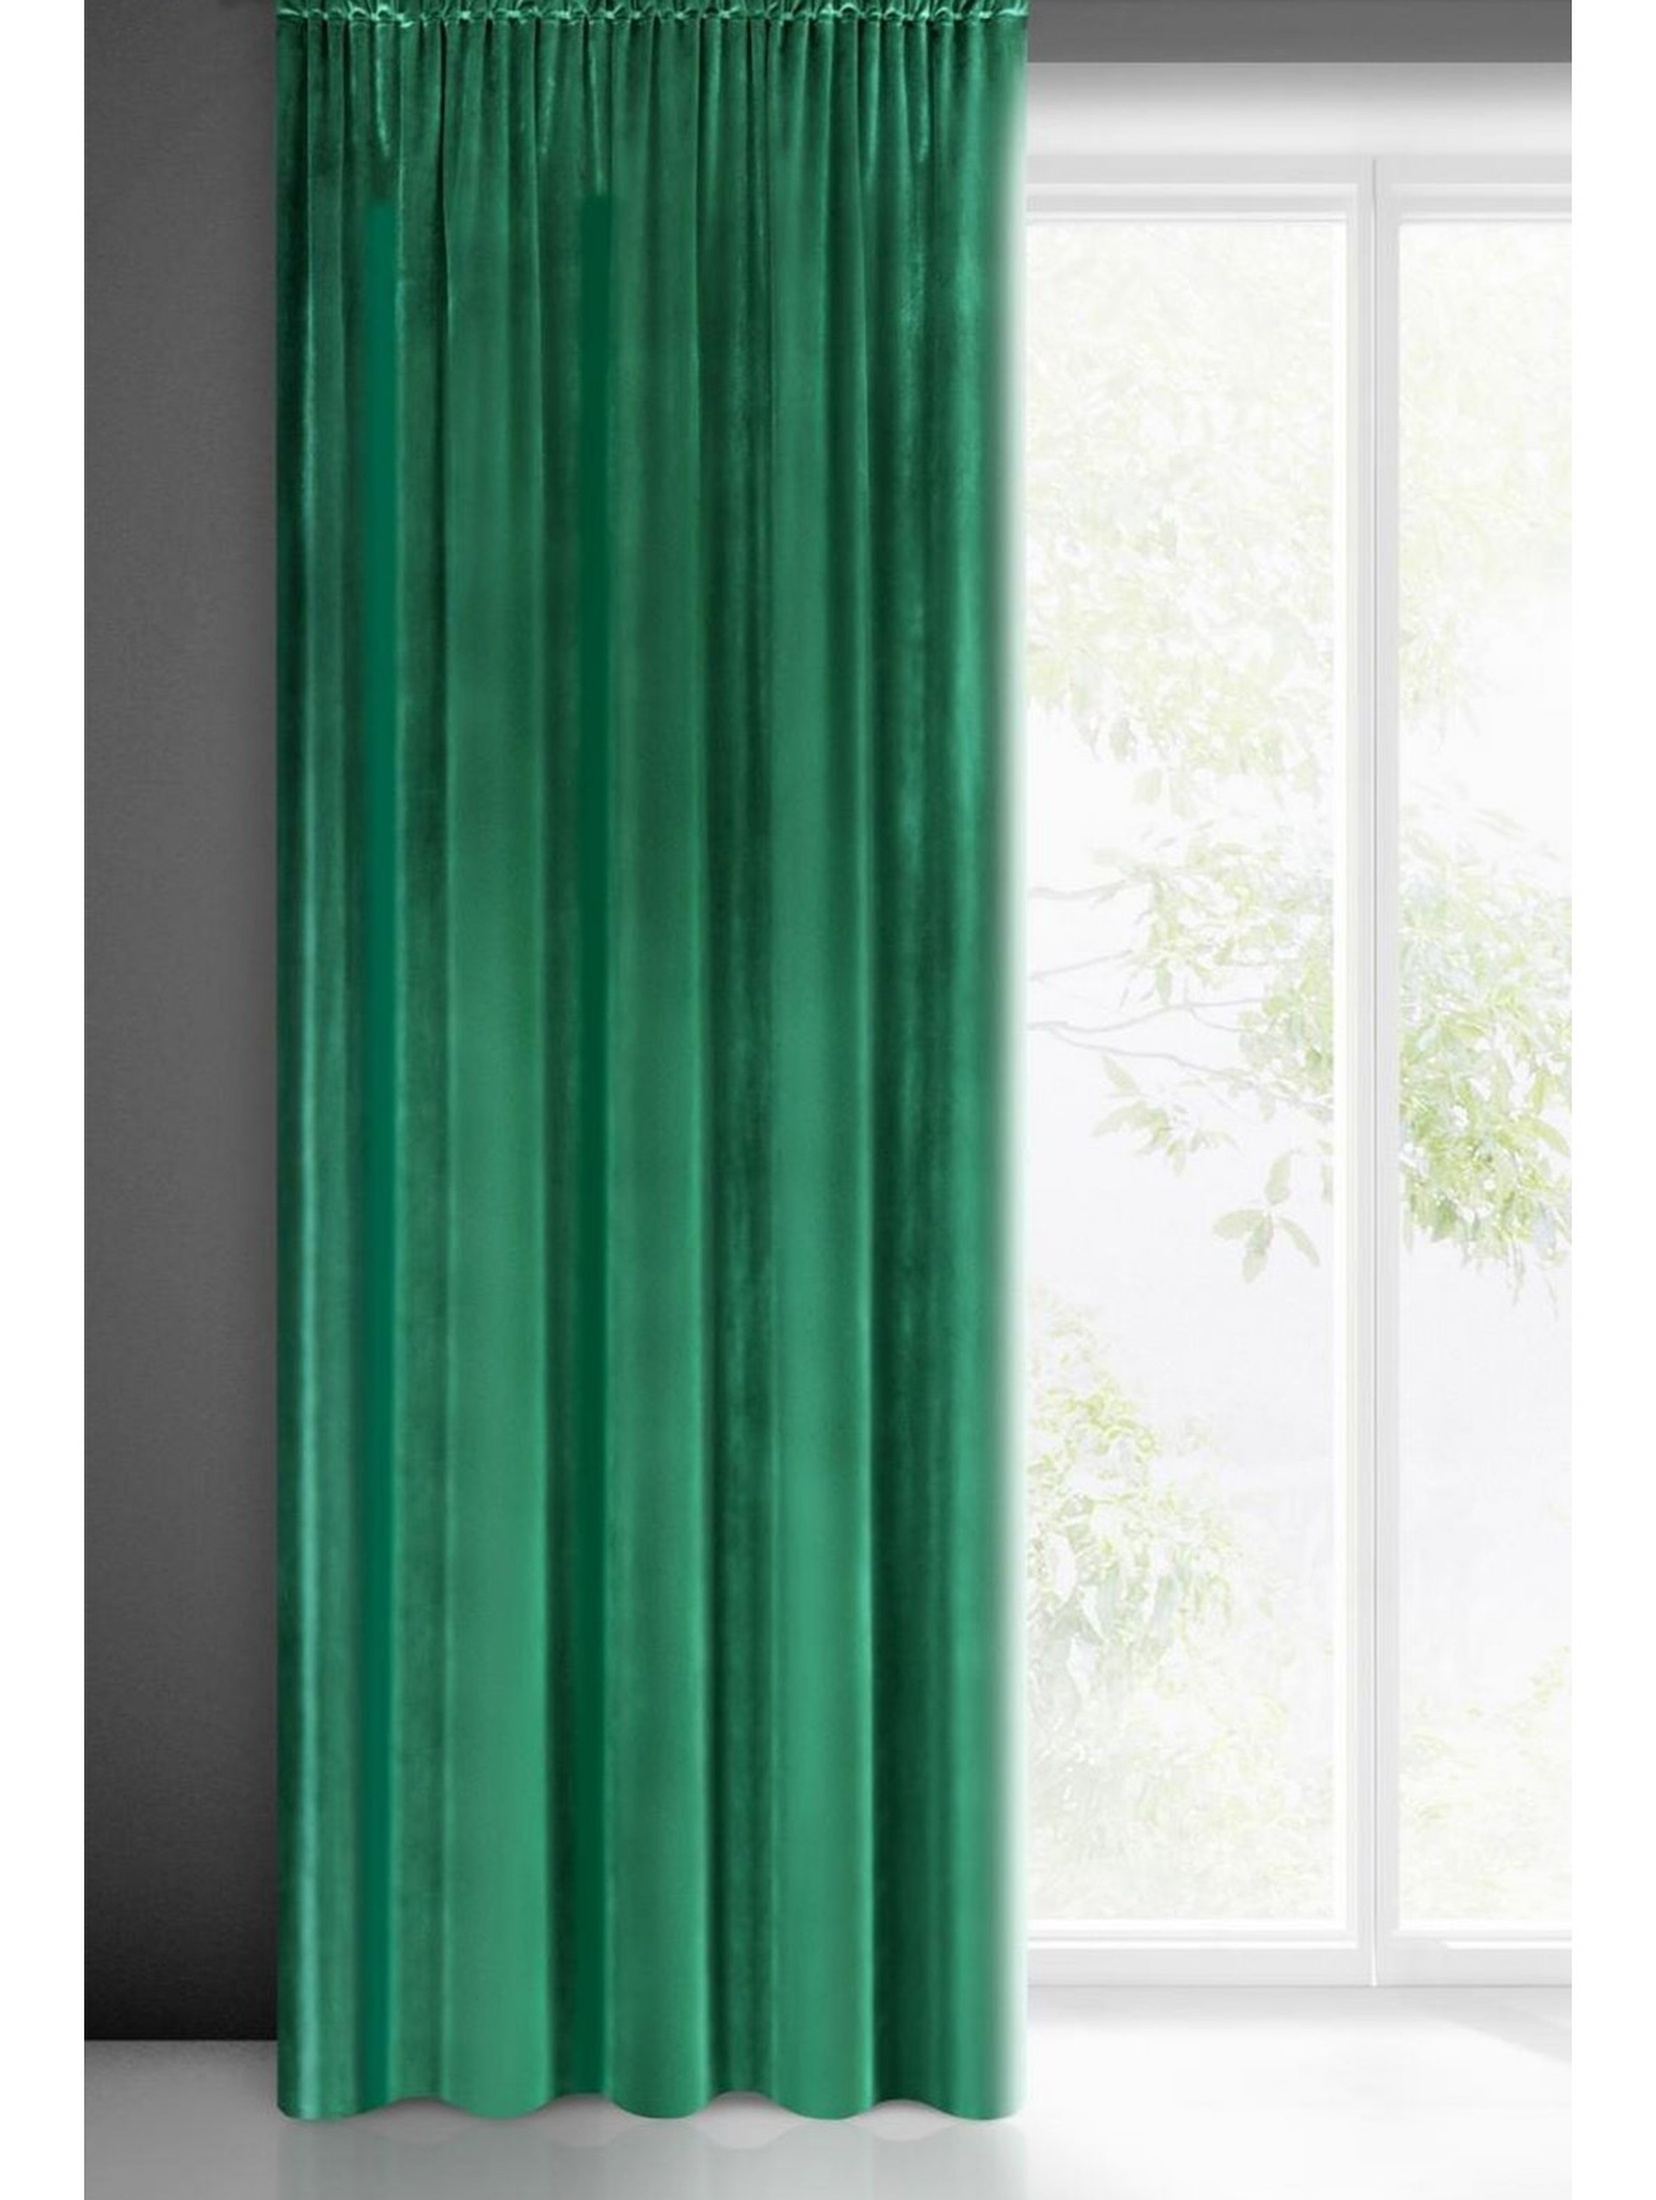 Zasłona gotowa samanta na taśmie 140x300 cm zielony